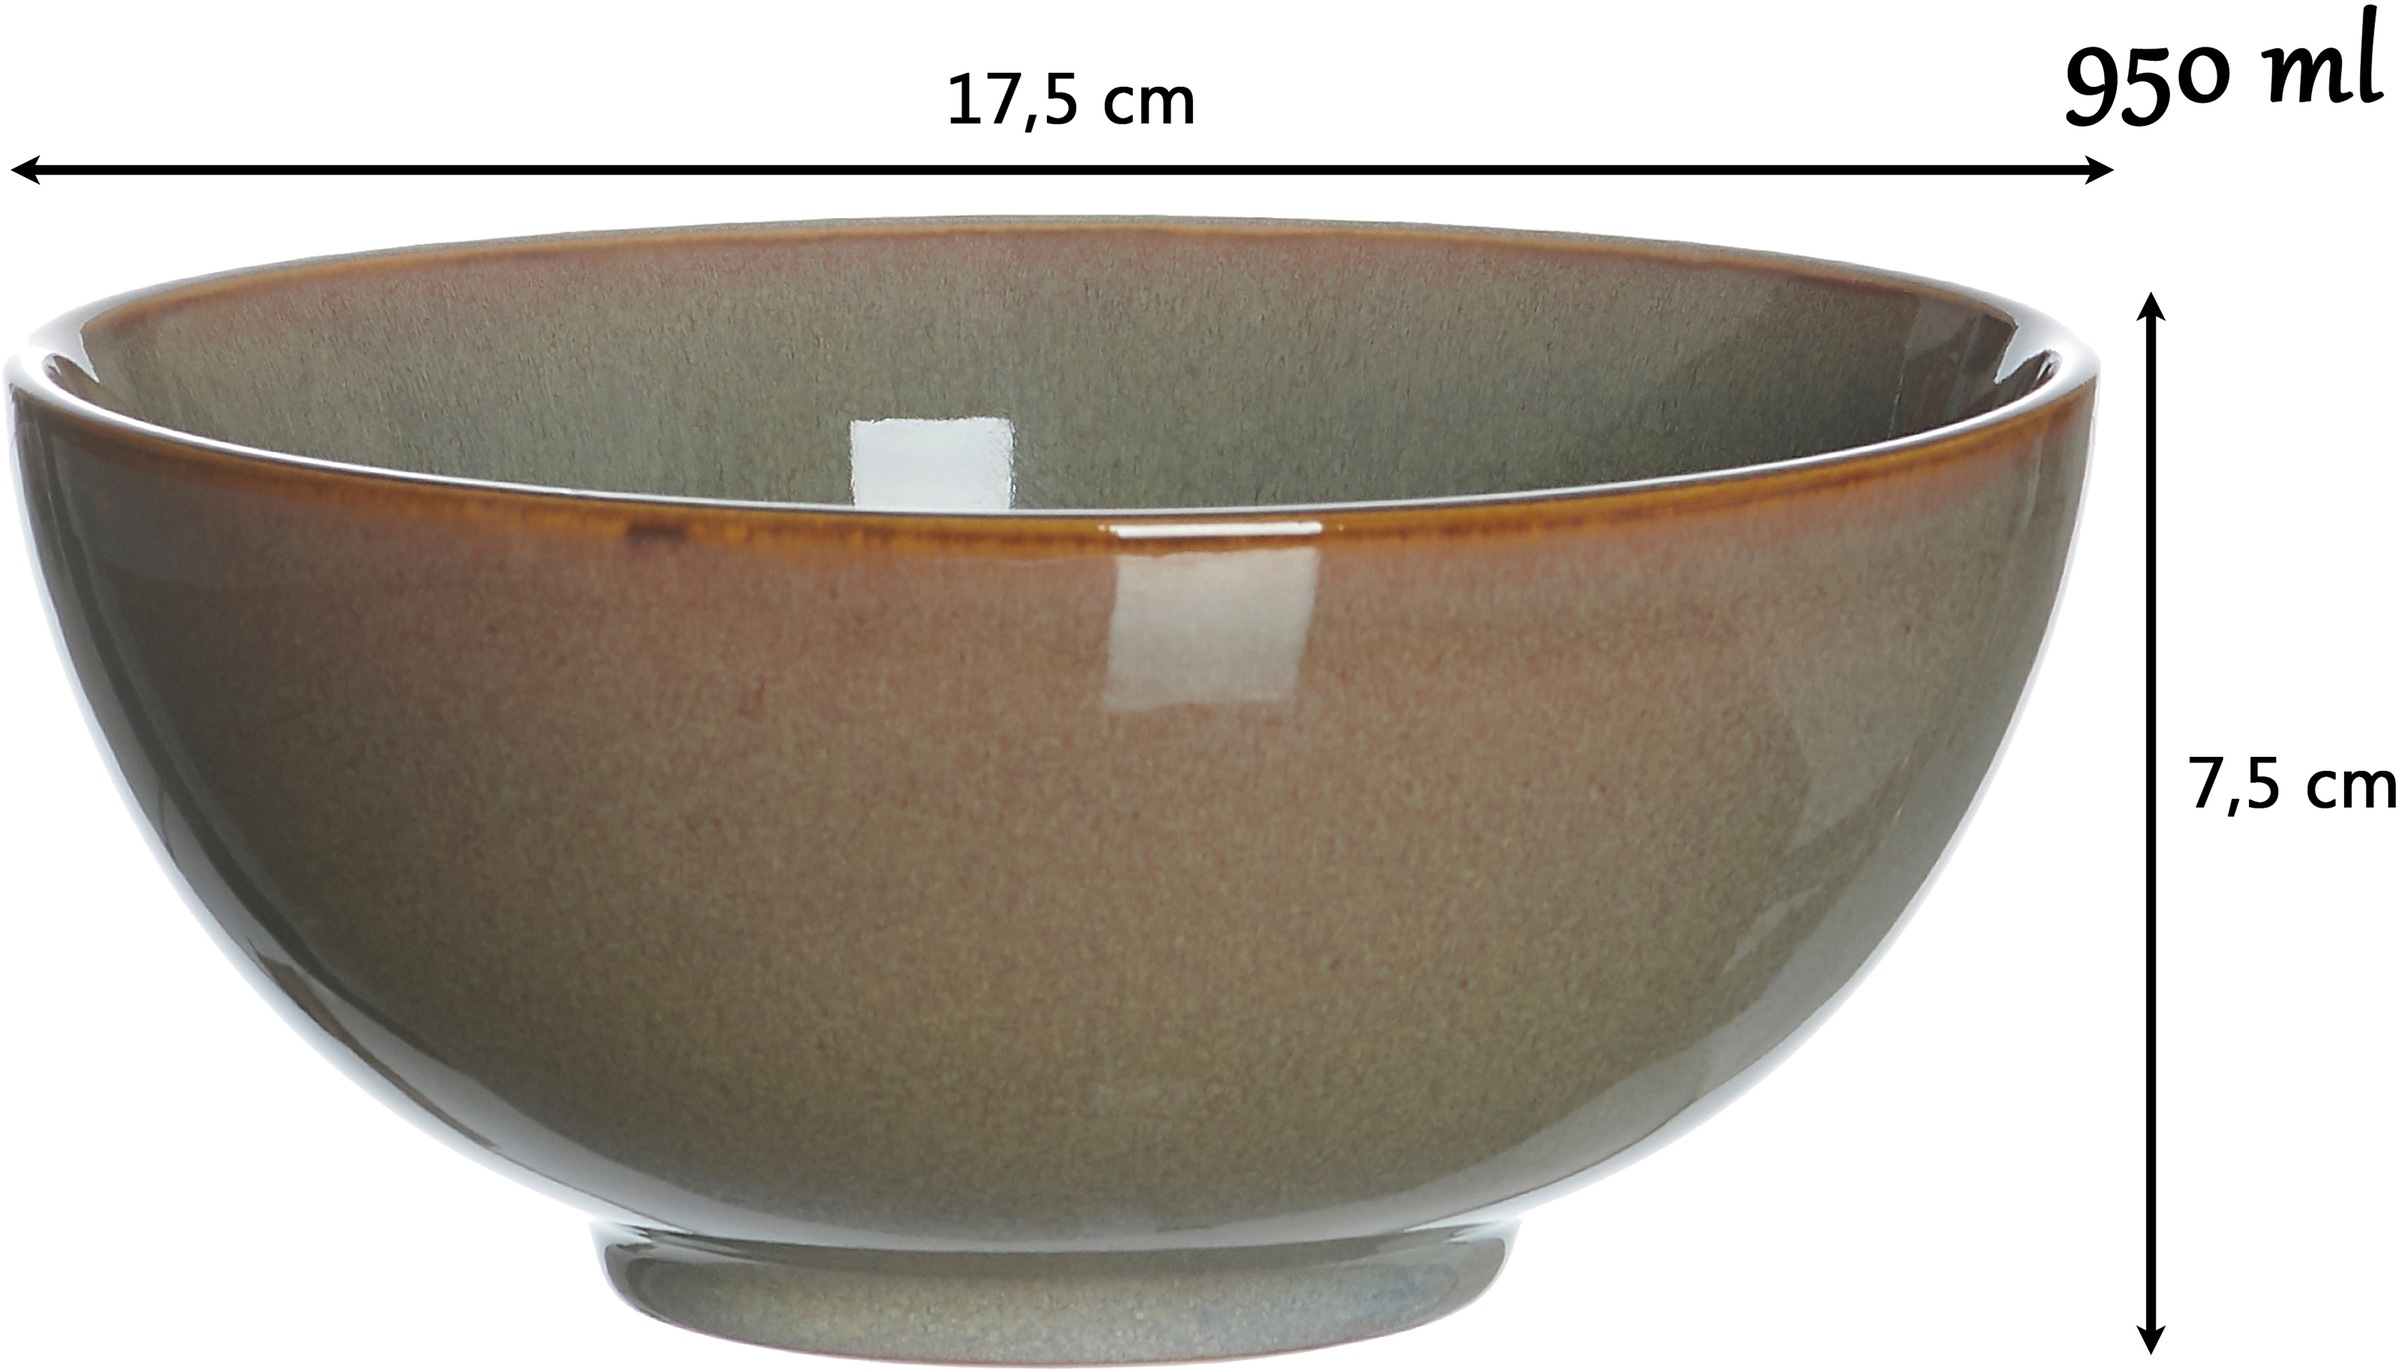 Ritzenhoff & Breker Schale »Puebla«, 2 tlg., aus Steinzeug, Buddha-Bowls, Ø 17,5 cm